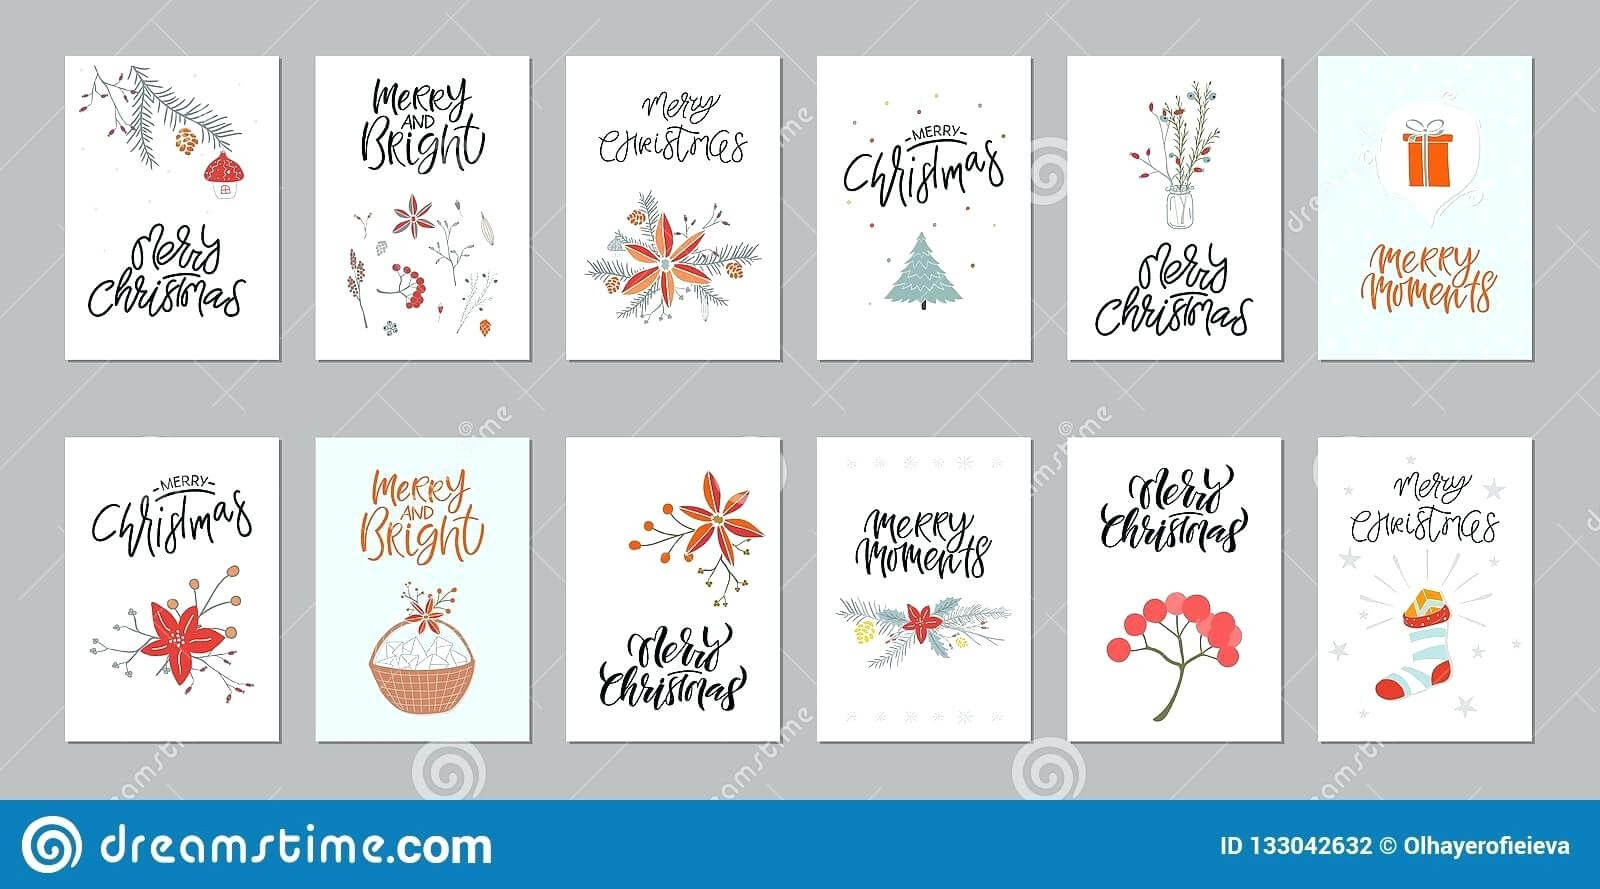 Printable Holiday Card Template – Bestawnings Intended For Printable Holiday Card Templates